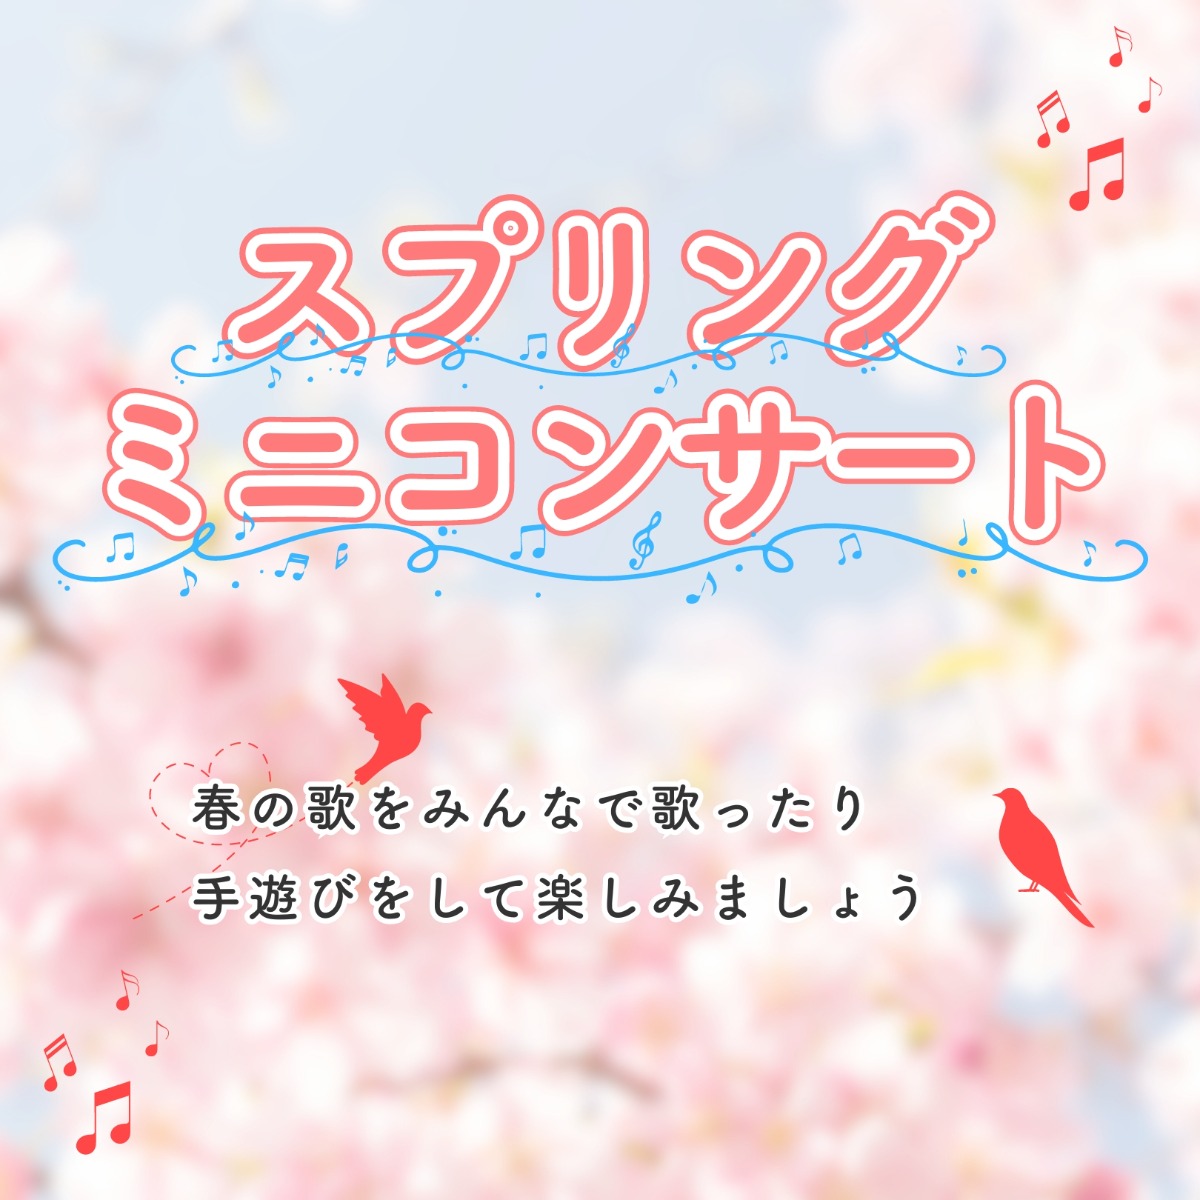 【徳島イベント情報】徳島木のおもちゃ美術館【4月】